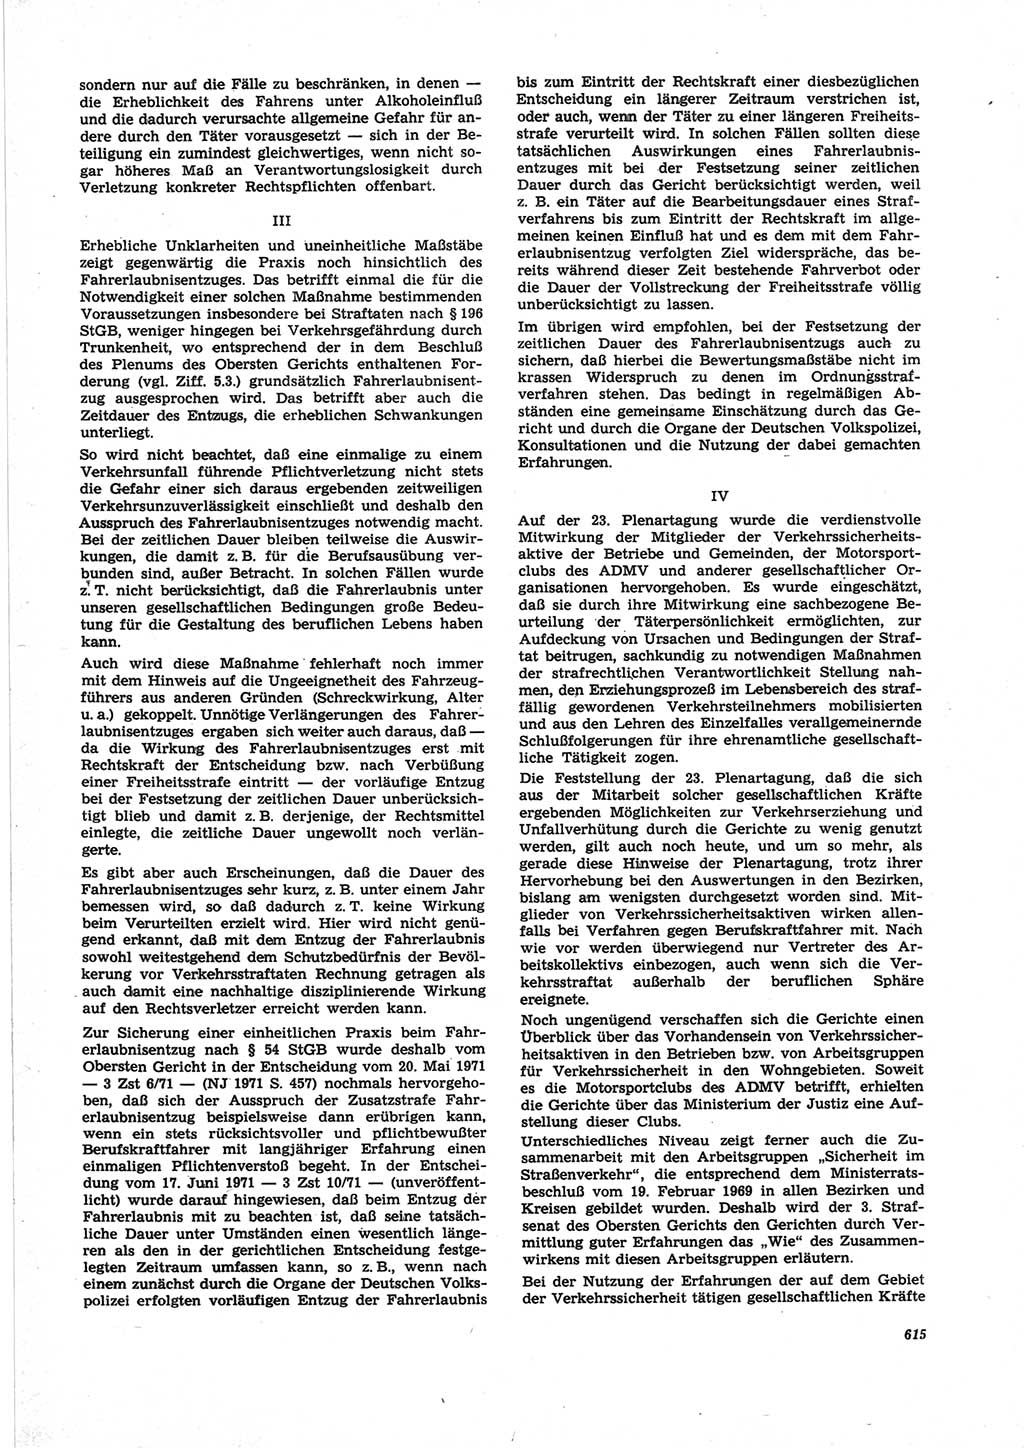 Neue Justiz (NJ), Zeitschrift für Recht und Rechtswissenschaft [Deutsche Demokratische Republik (DDR)], 25. Jahrgang 1971, Seite 615 (NJ DDR 1971, S. 615)